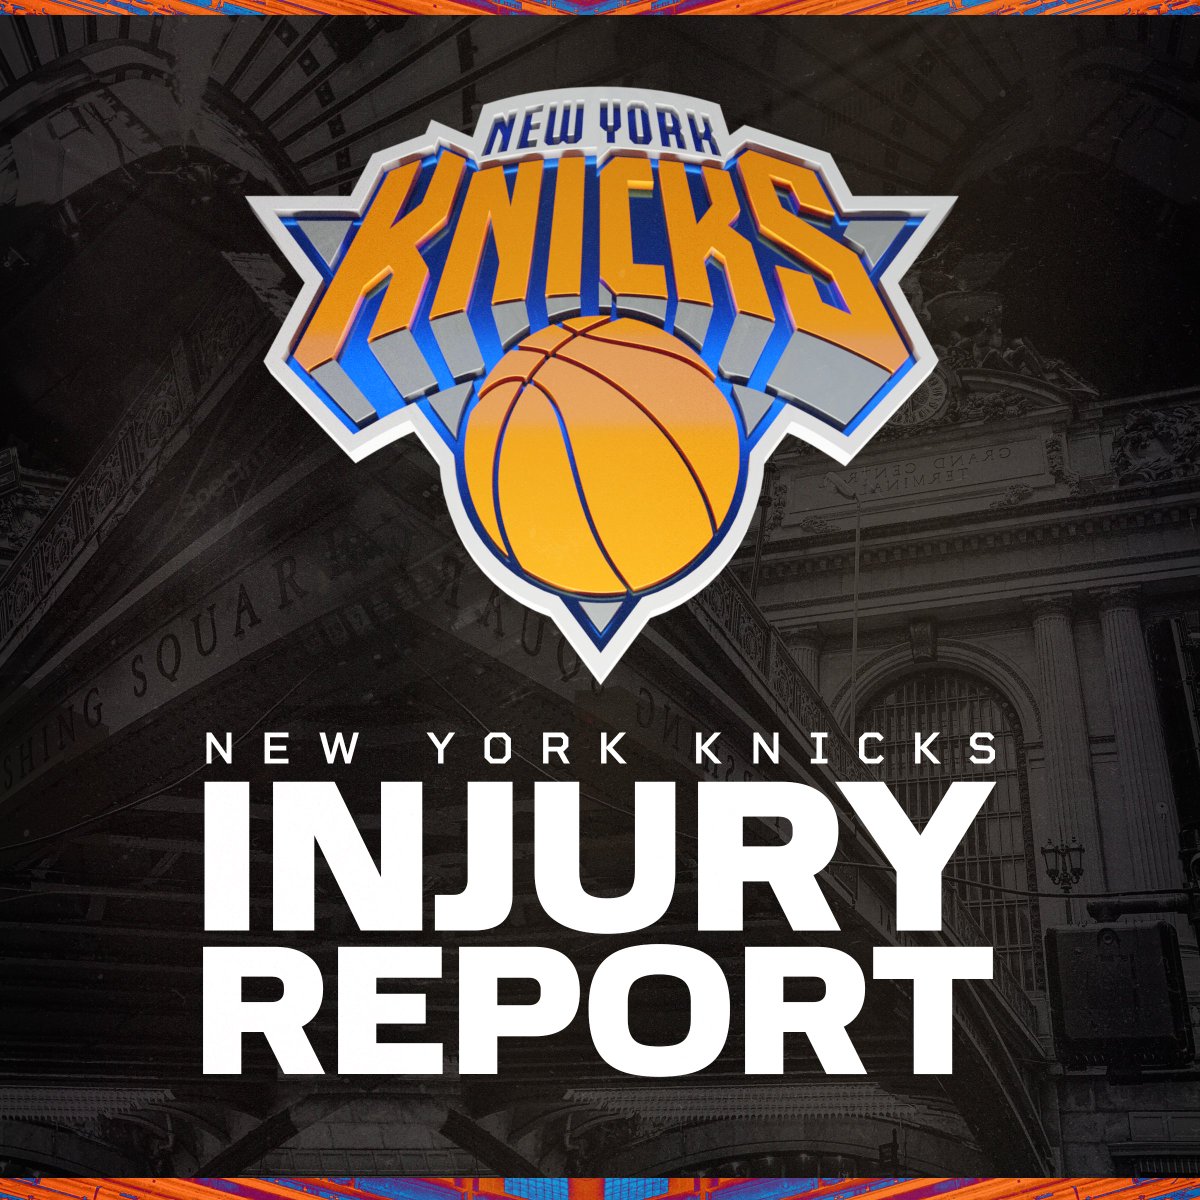 Knicks Shut Down Adding Veteran Scorer After Obi Toppin Injury: Report